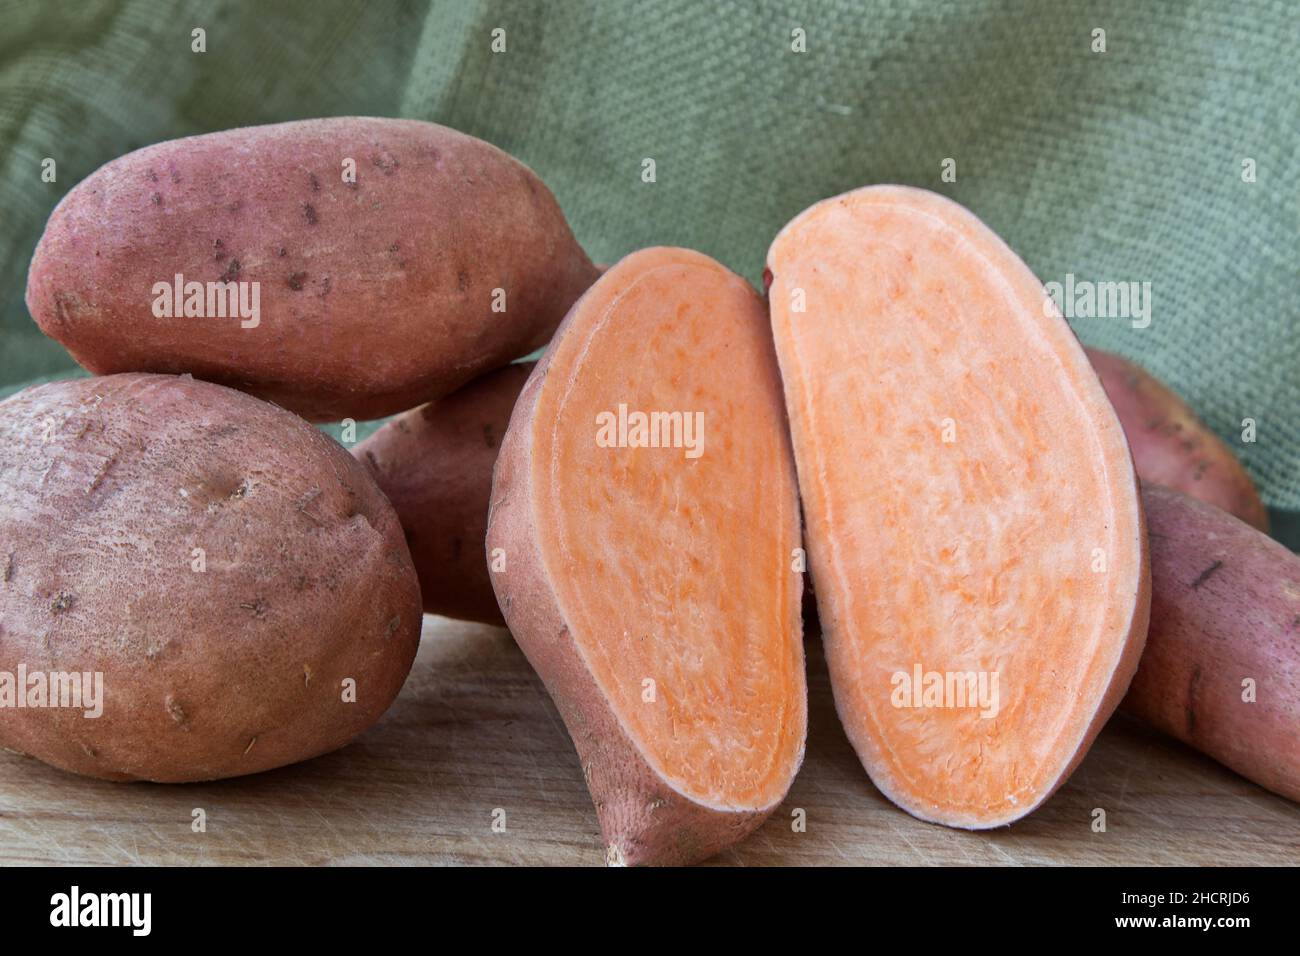 Kamote Knollen, Sorte von Süßkartoffeln 'Ipomoea batatas', philippinische Heilkräuterpflanze, Kalifornien, Stockfoto